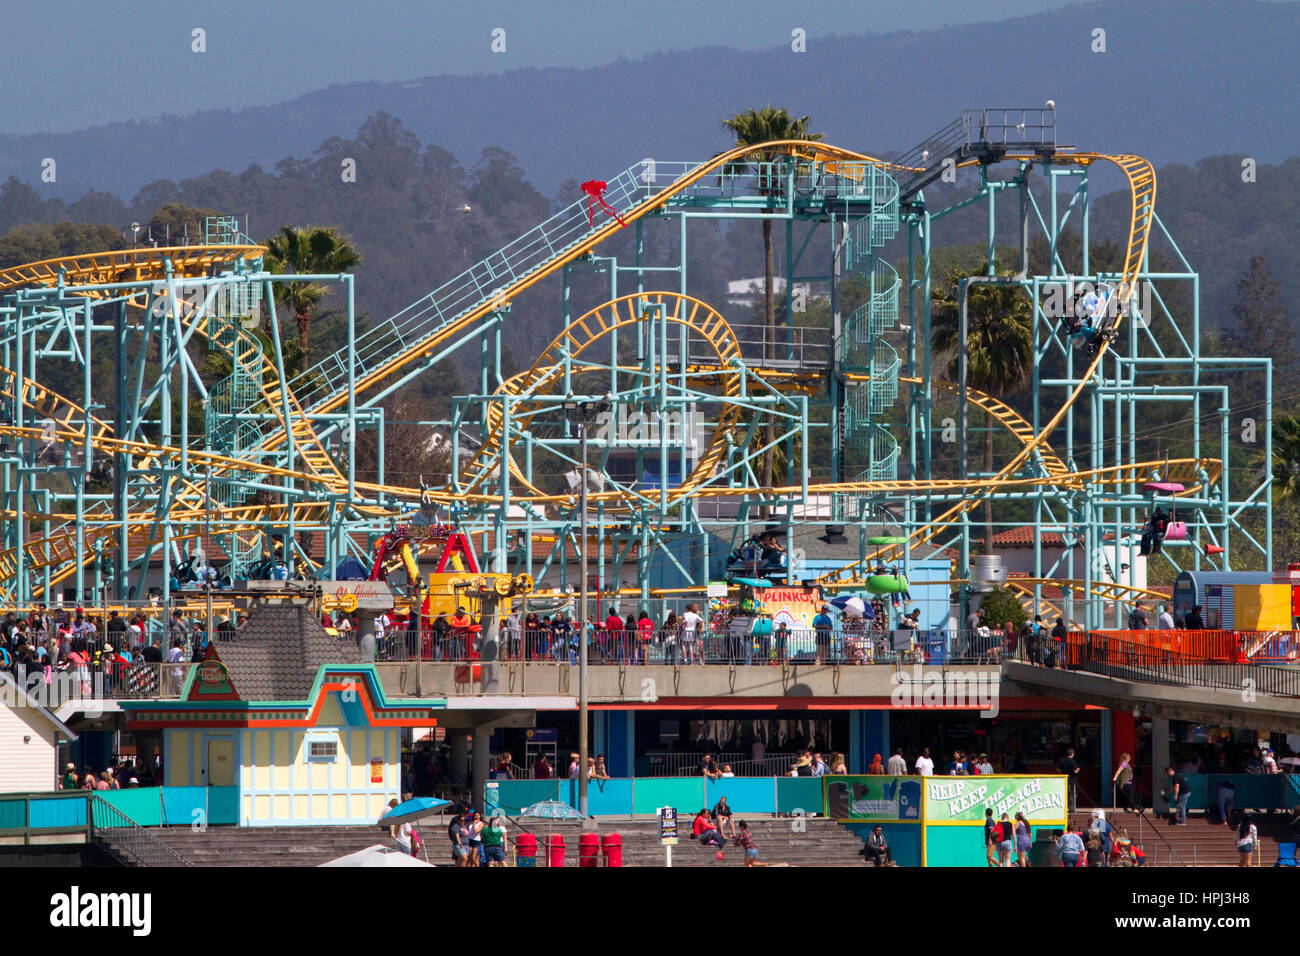 La resaca el acero hilado roller coaster en Santa Cruz Beach Boardwalk en Santa Cruz, California, Estados Unidos. Foto de stock